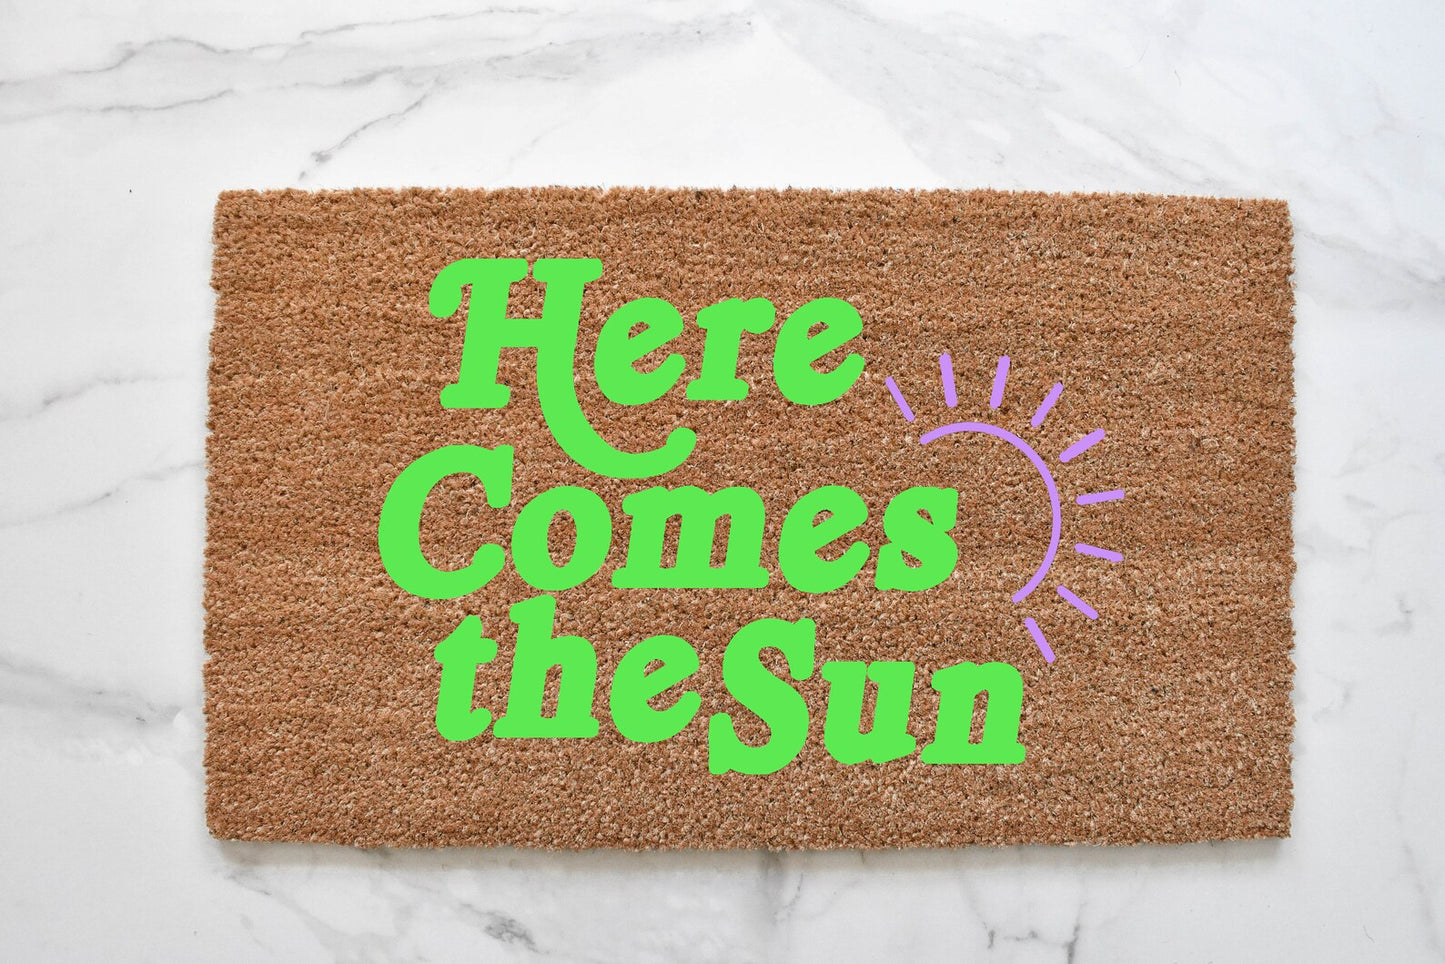 Here Comes The Sun Doormat